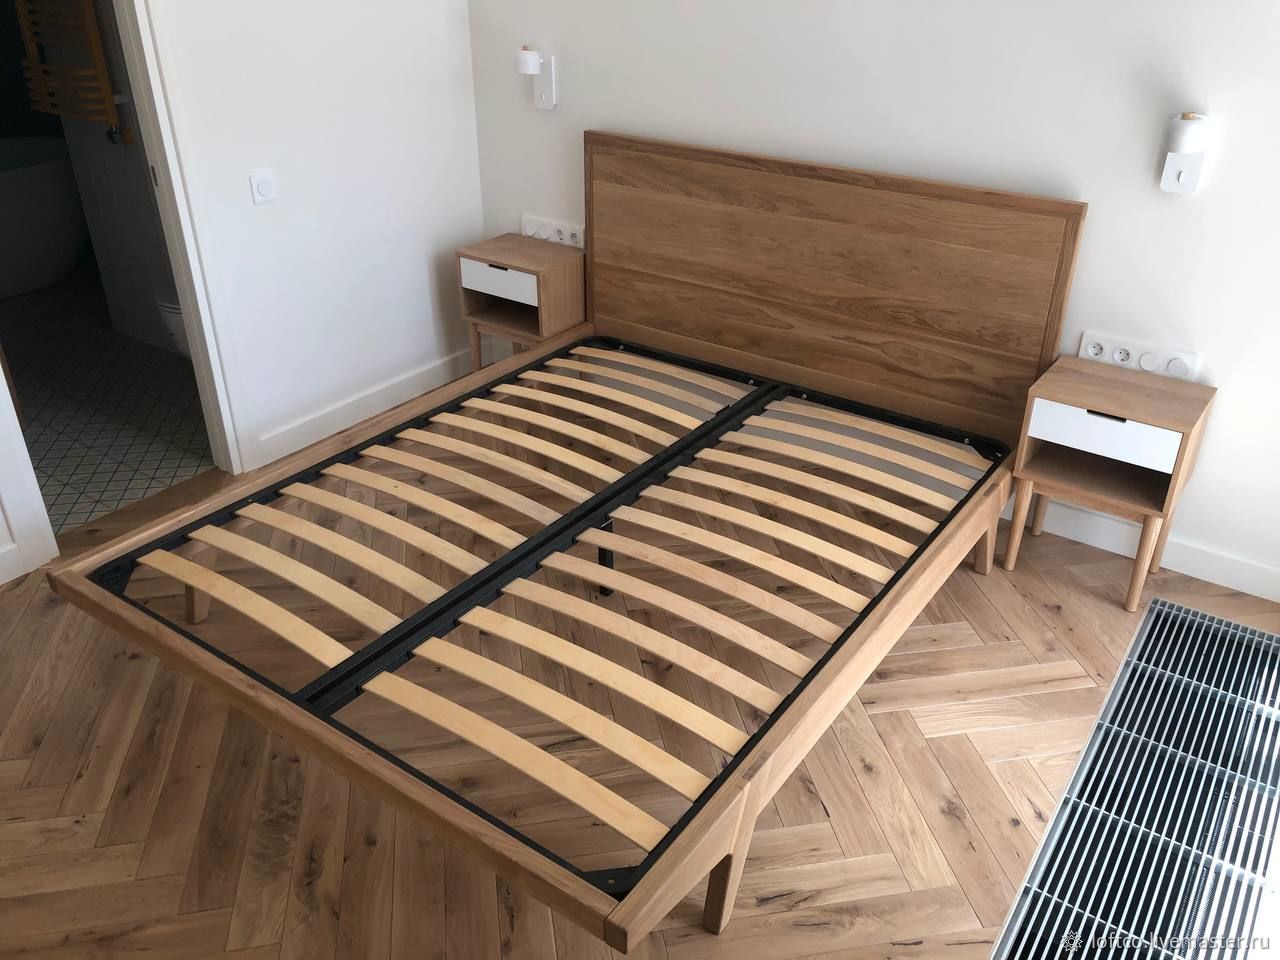 Дубовая кровать